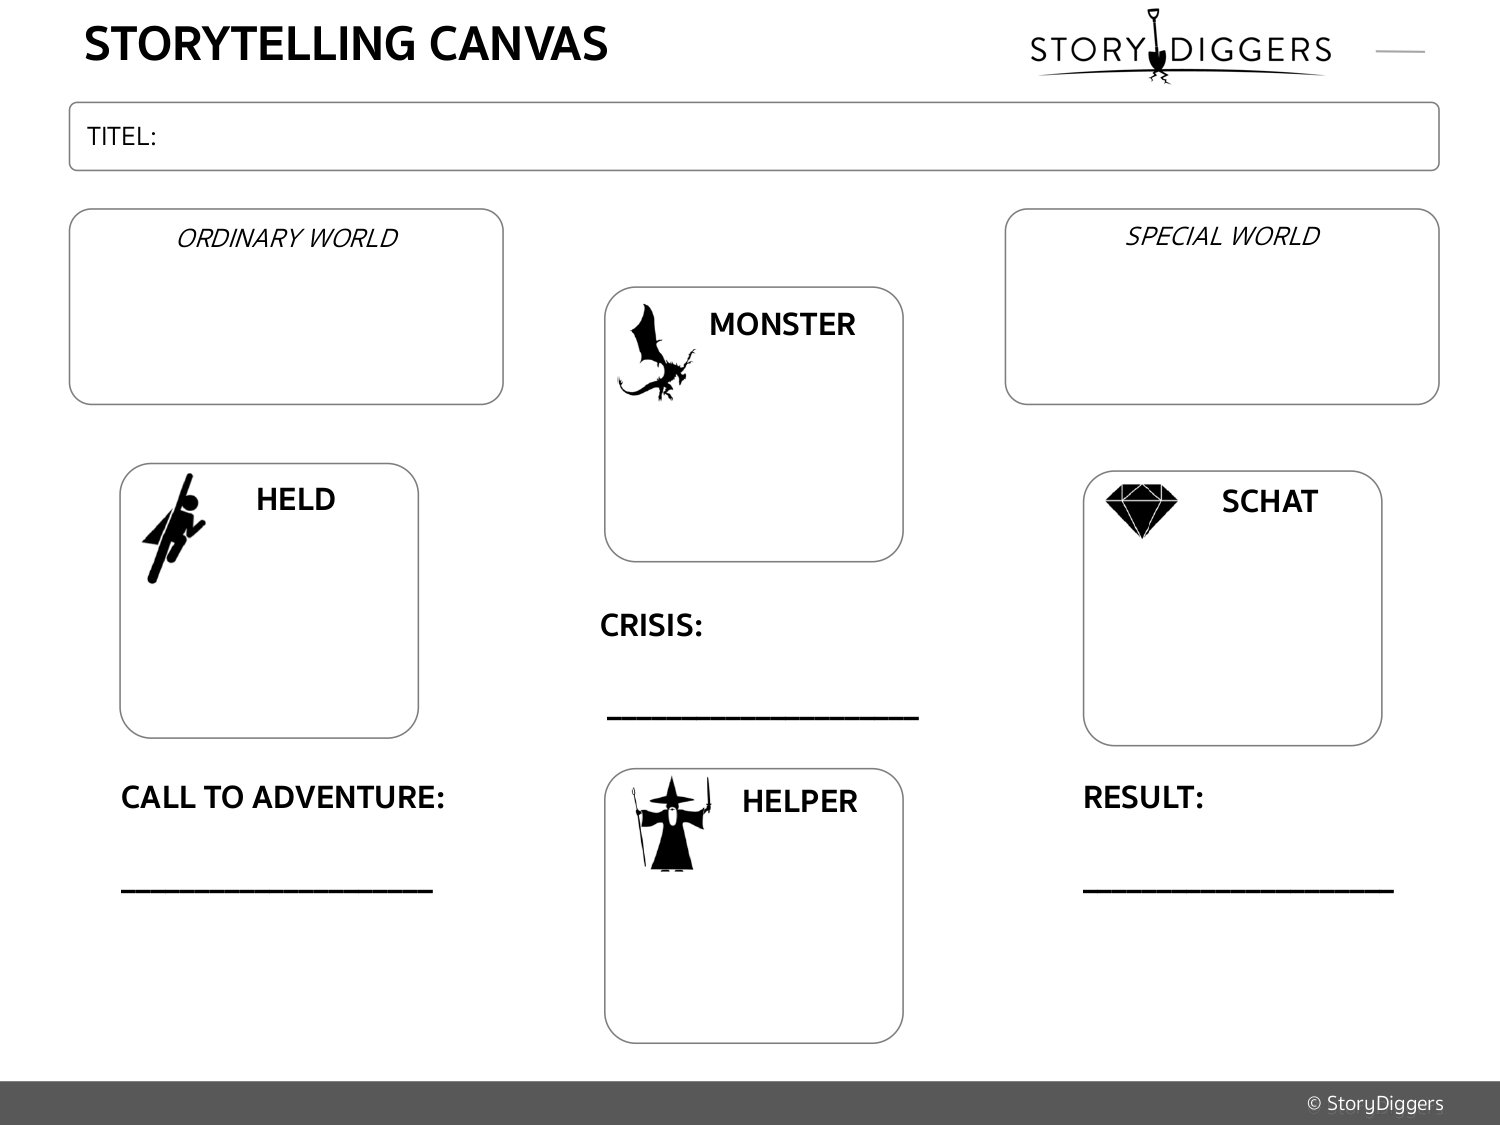 Storytelling Canvas op basis van Hero's Journey van Campbell